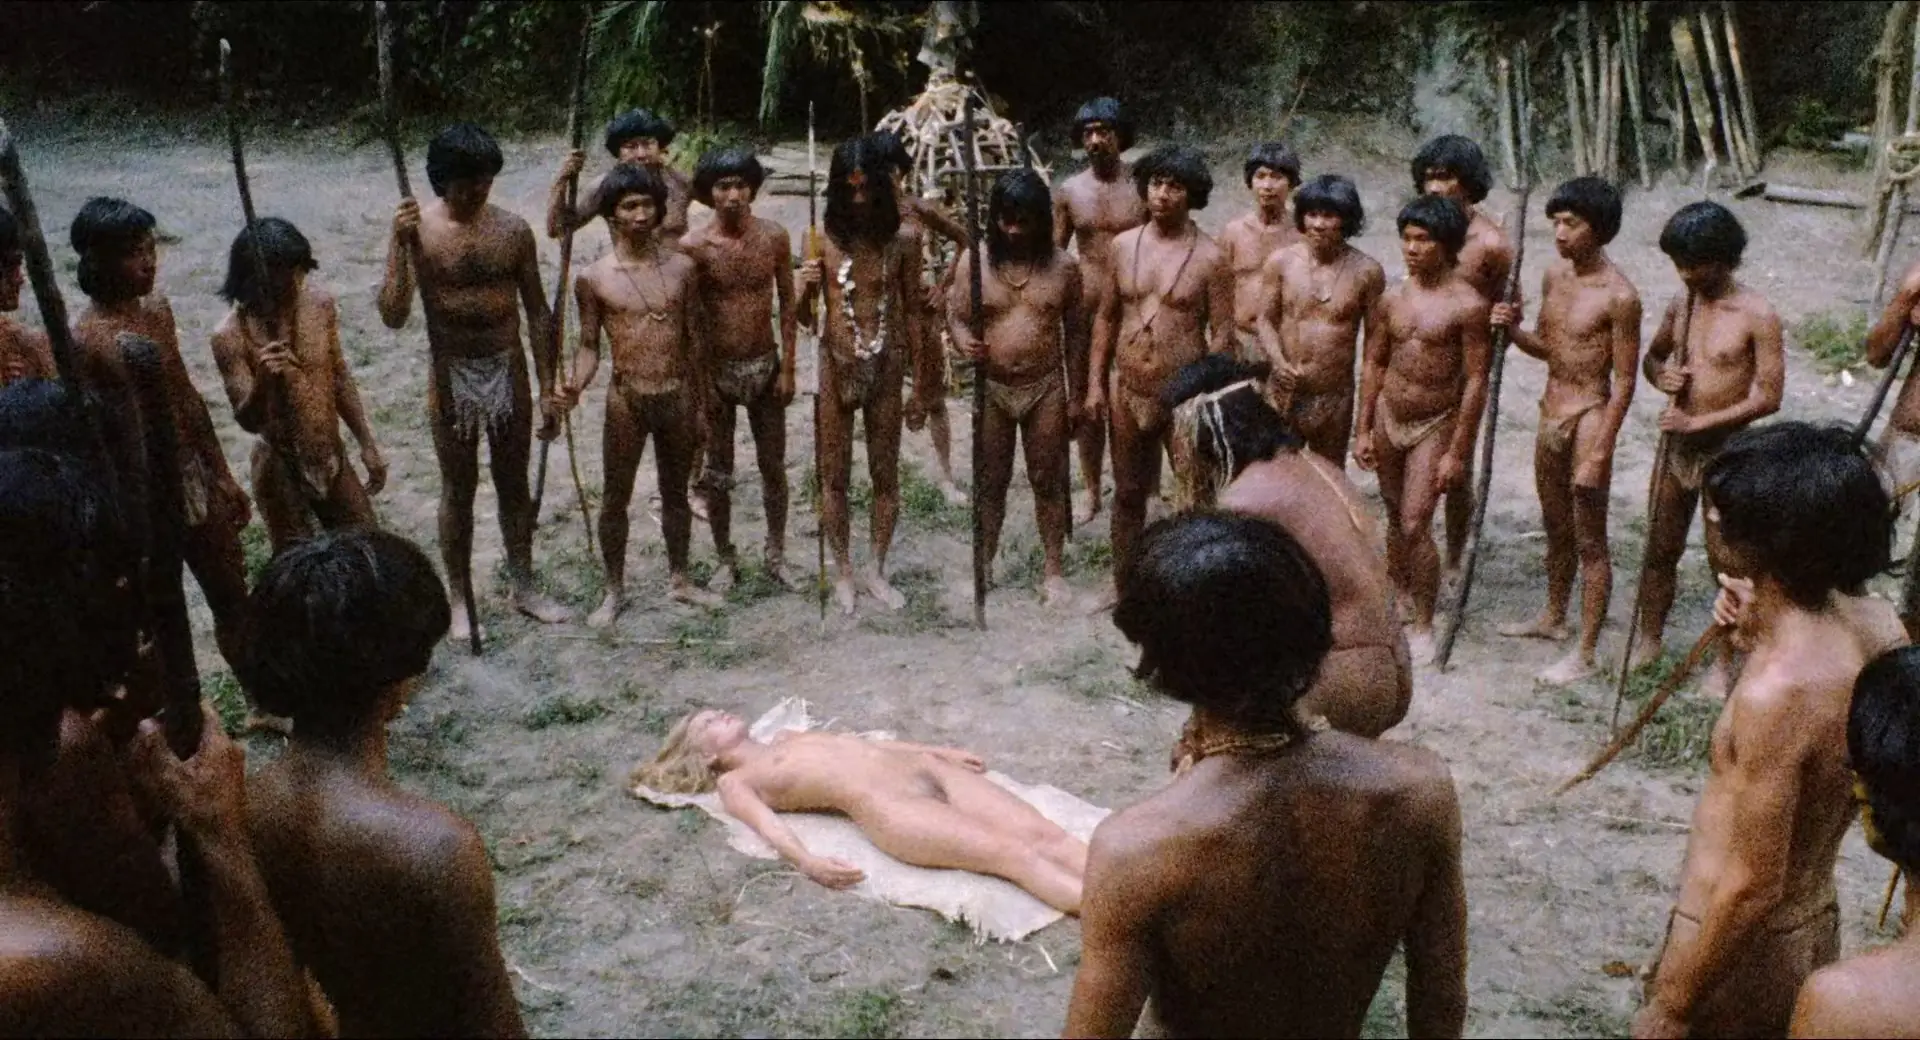 племя с голыми мужиками фото 40